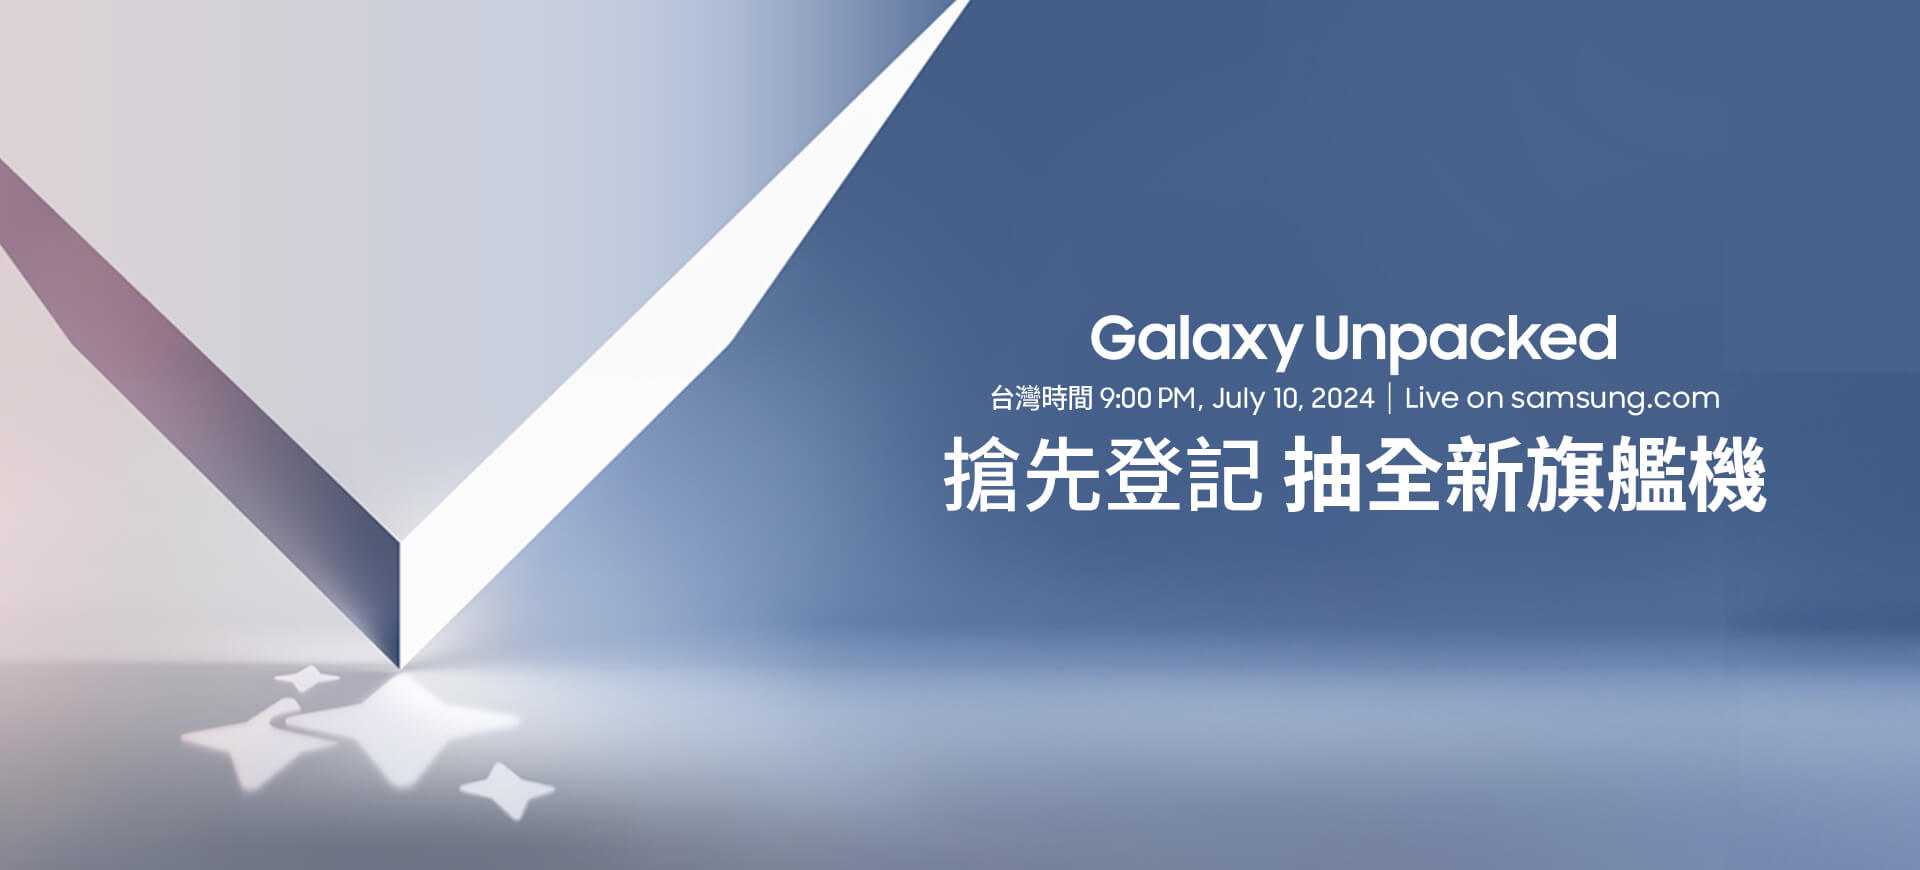 【Galaxy Unpacked 即將再次撼動世界】 三星全球發表會在巴黎，台灣時間 7/10 晚間 9:00 同步熱映